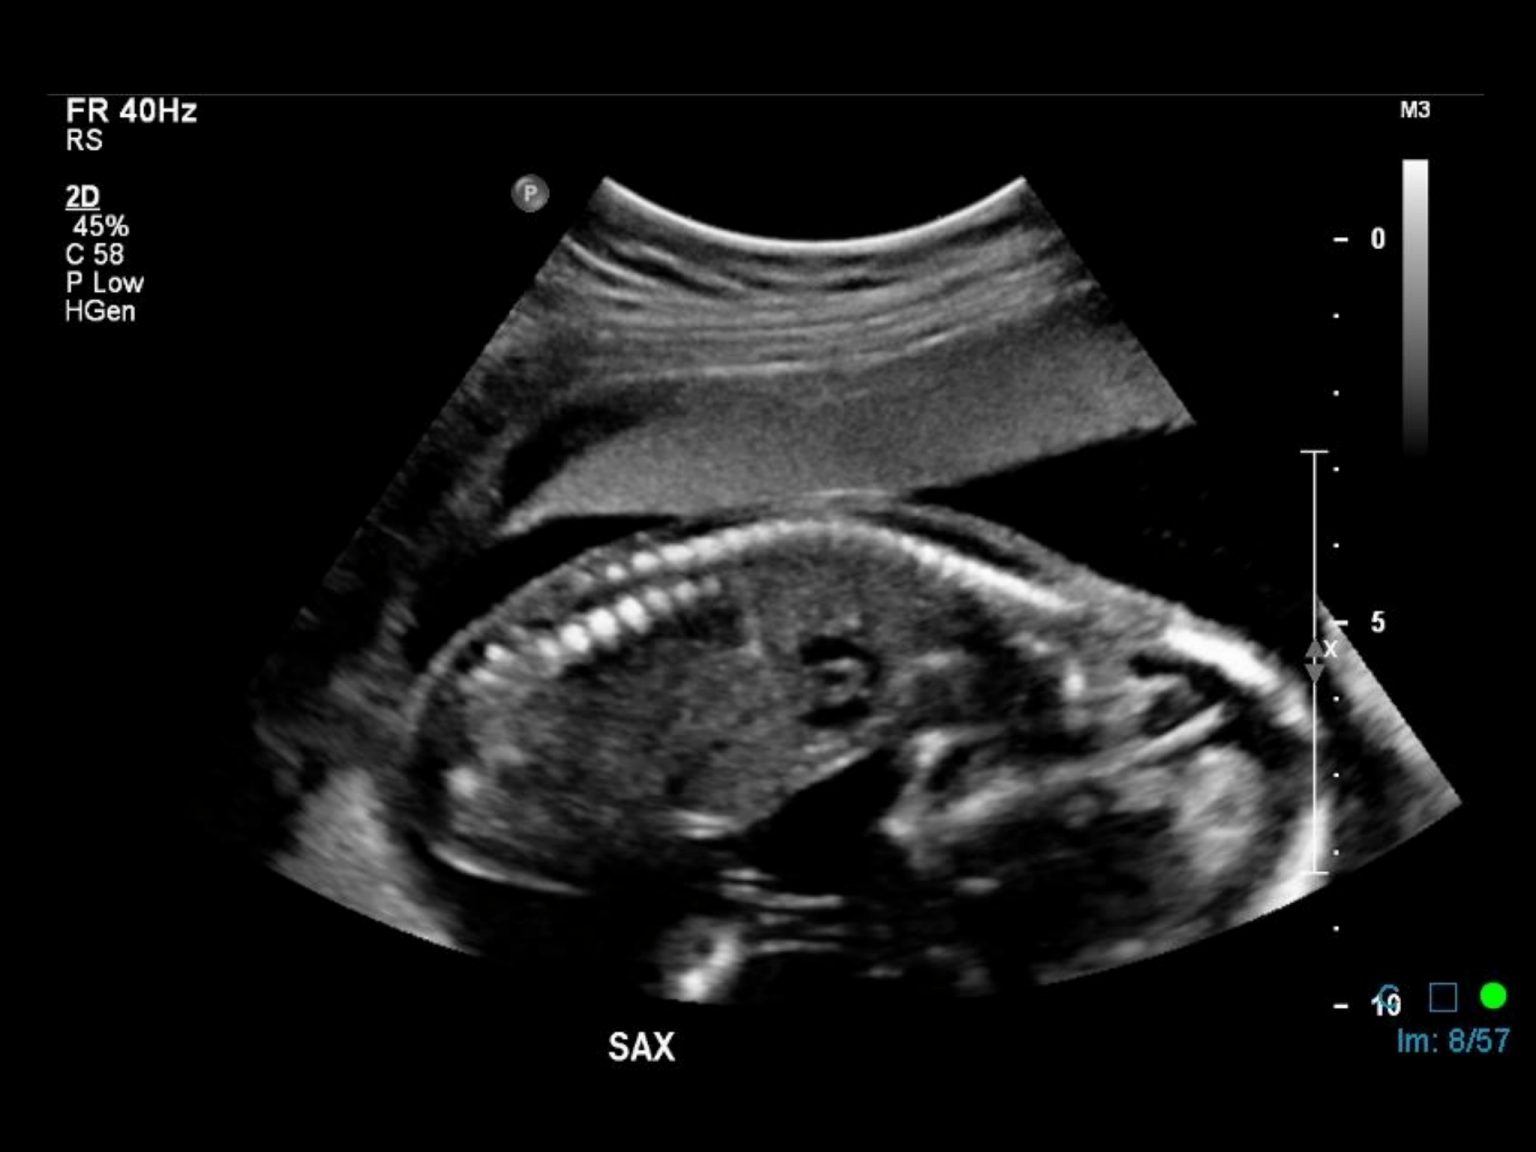 presentation on ultrasound